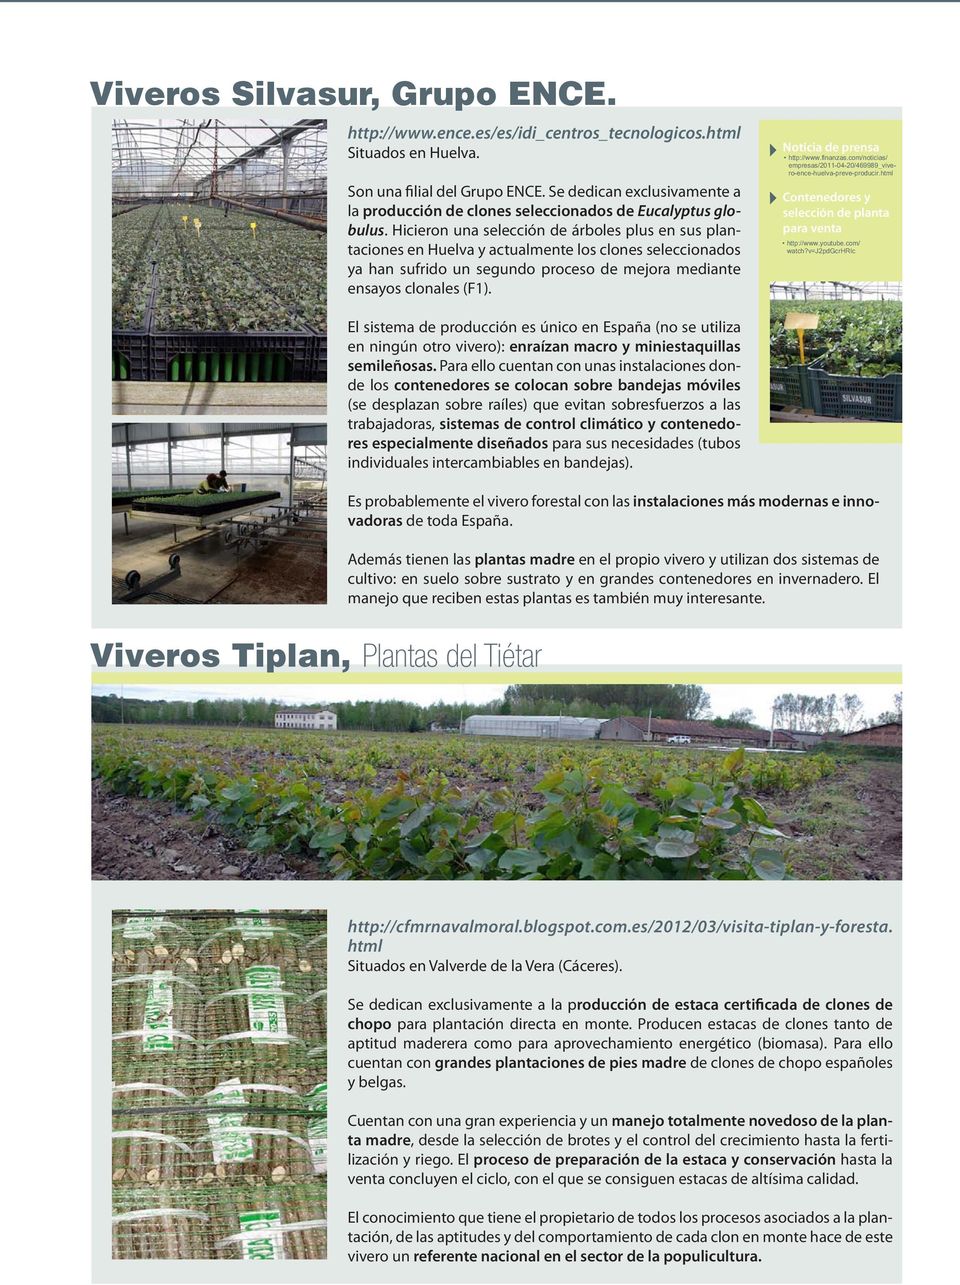 Hicieron una selección de árboles plus en sus plantaciones en Huelva y actualmente los clones seleccionados ya han sufrido un segundo proceso de mejora mediante ensayos clonales (F1).